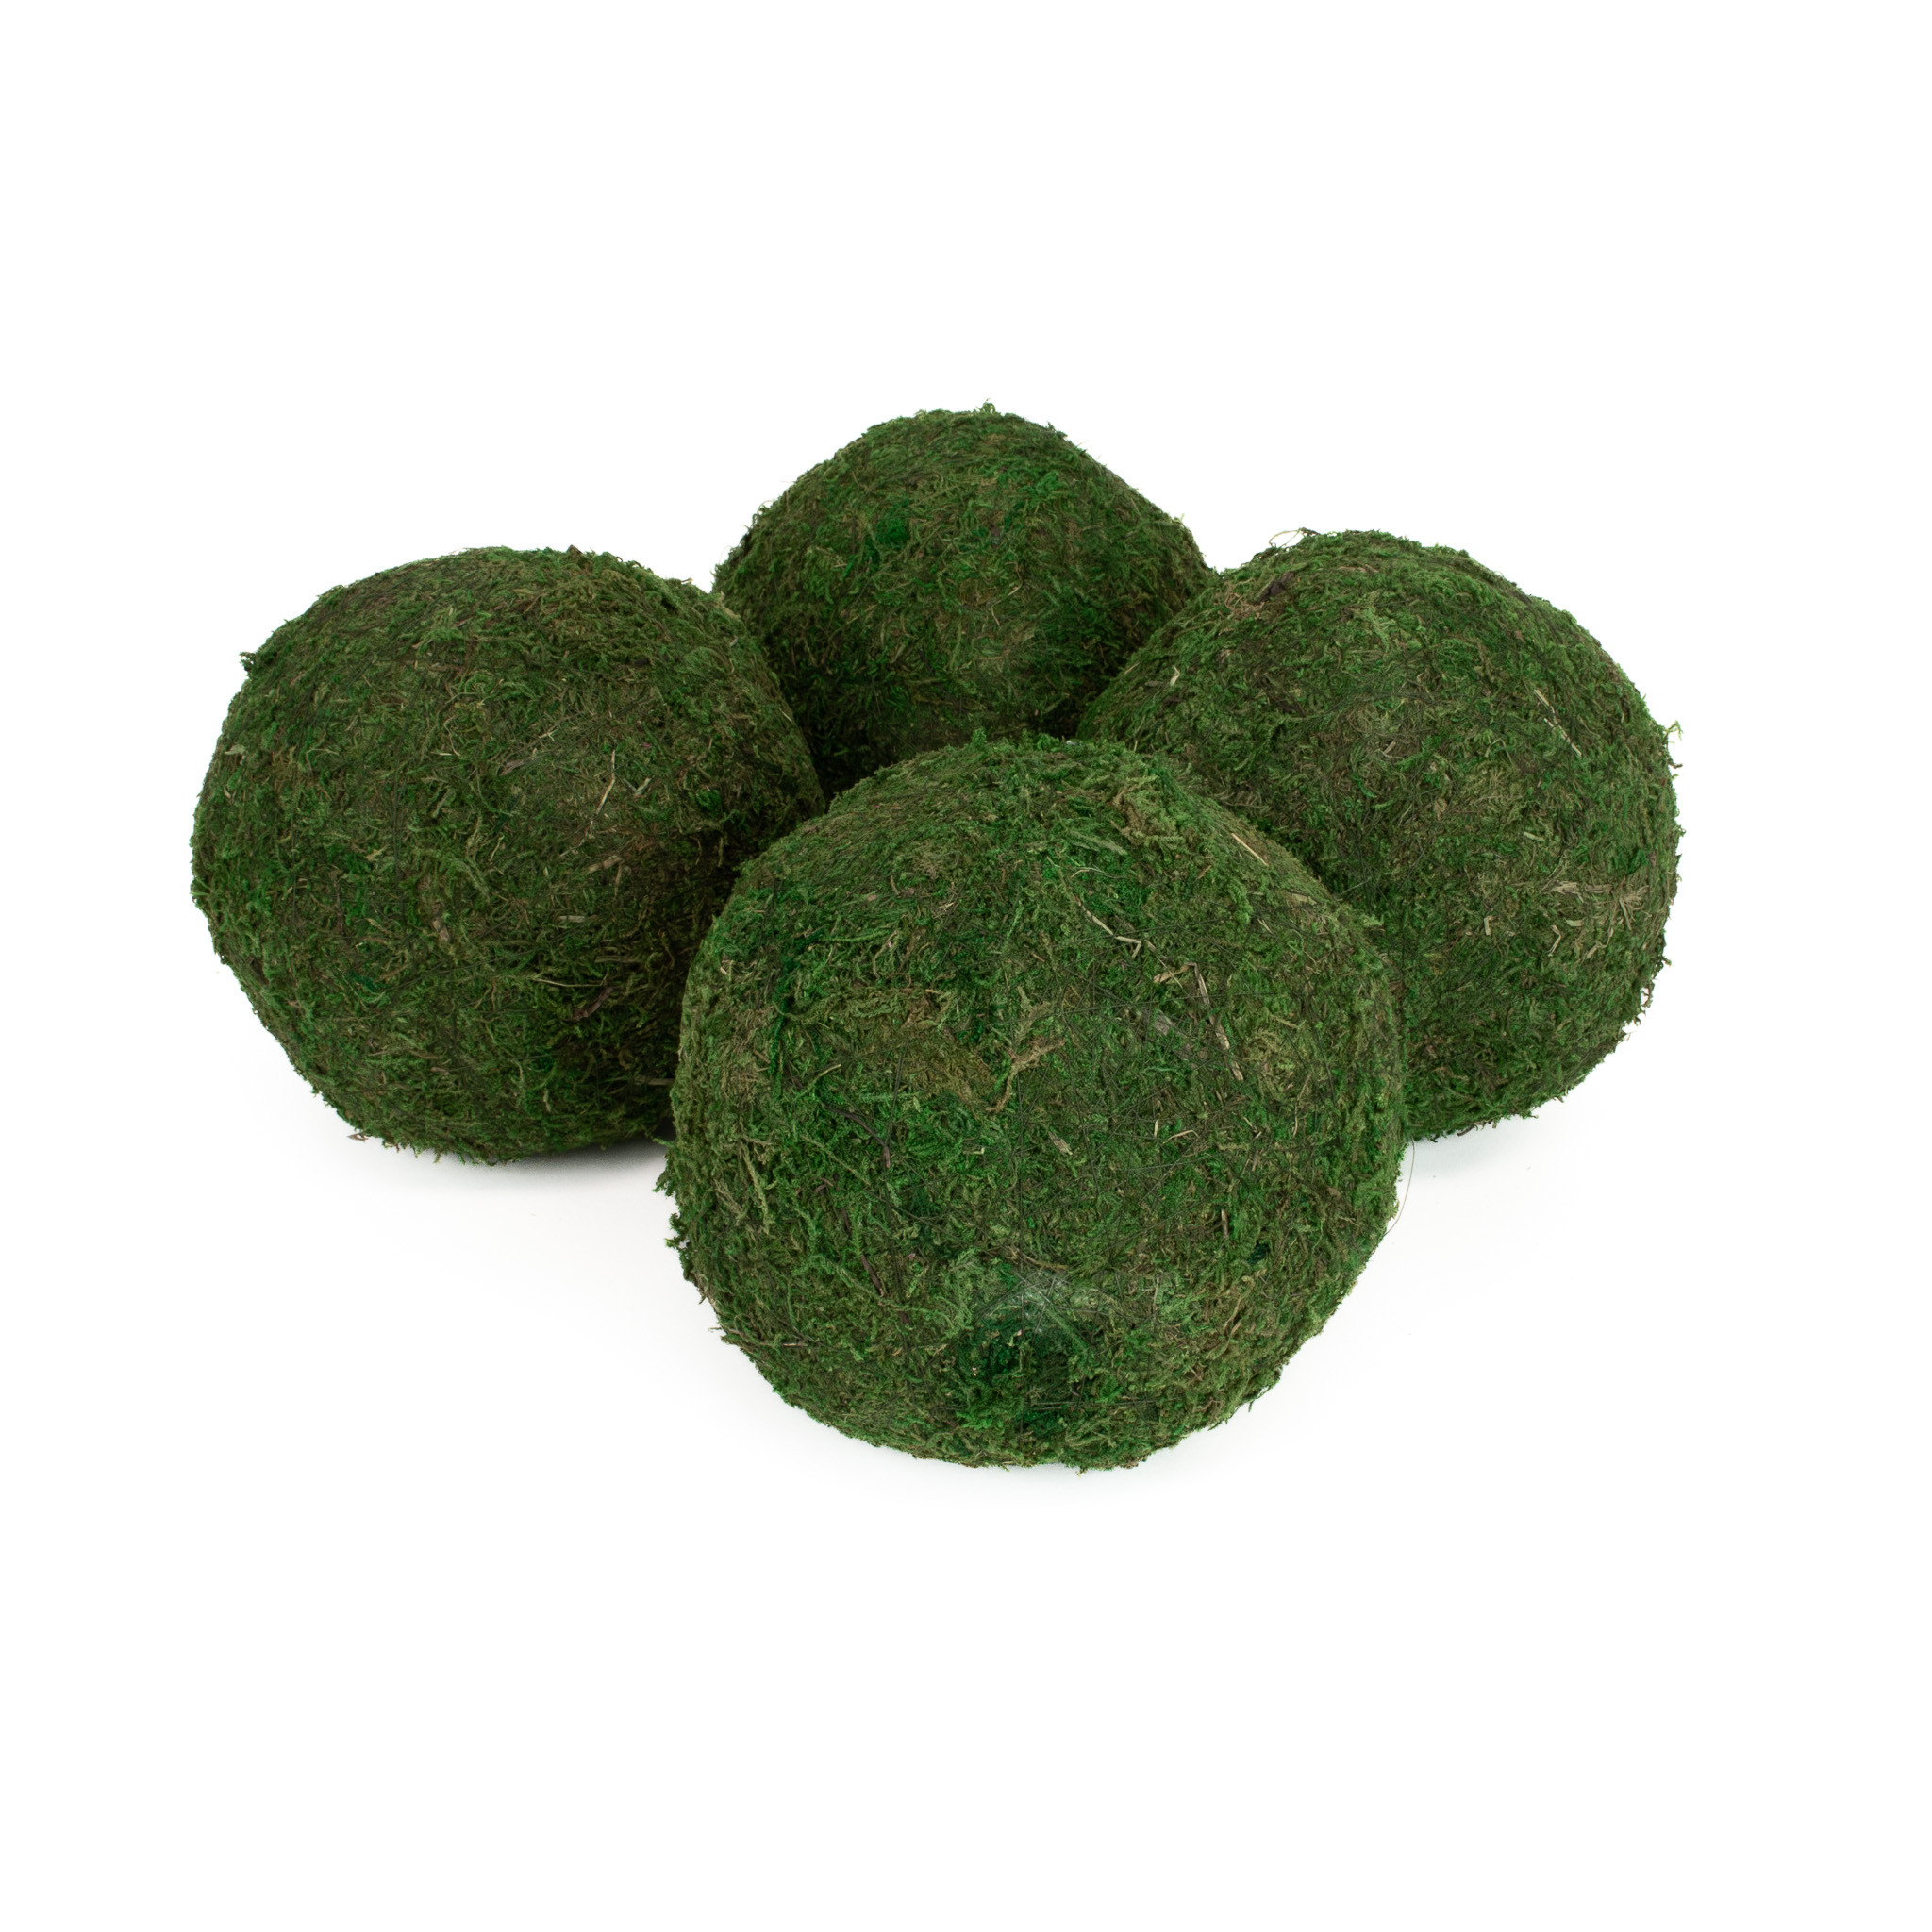 GREEN SHEET MOSS BALLS - 6 INCH